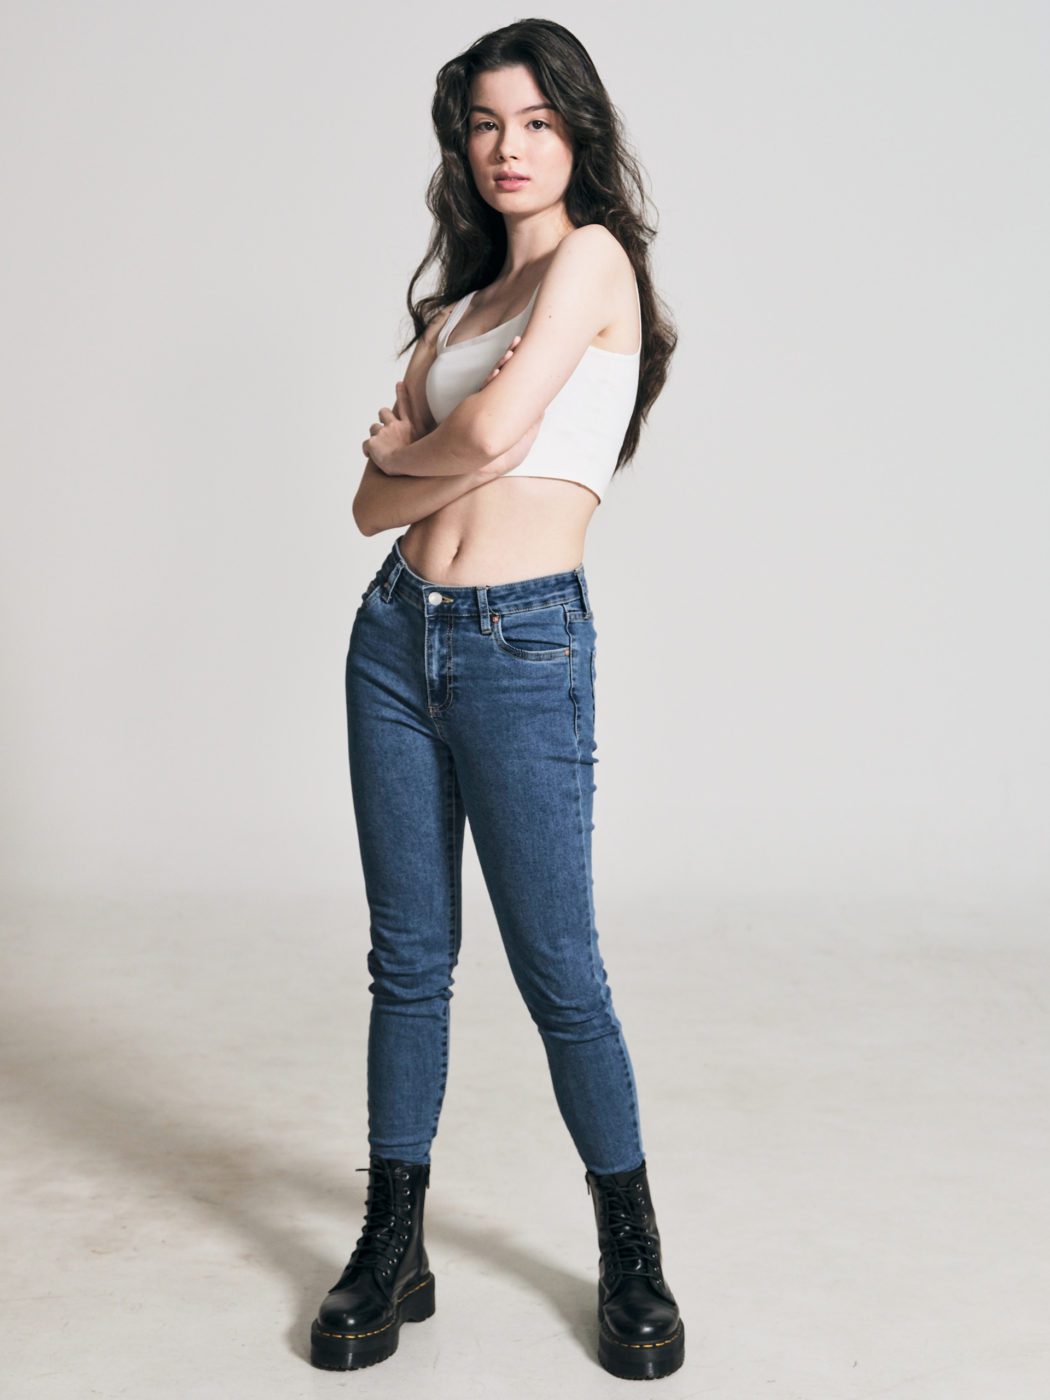 chloe bolt singapore basic models female fashion commercial